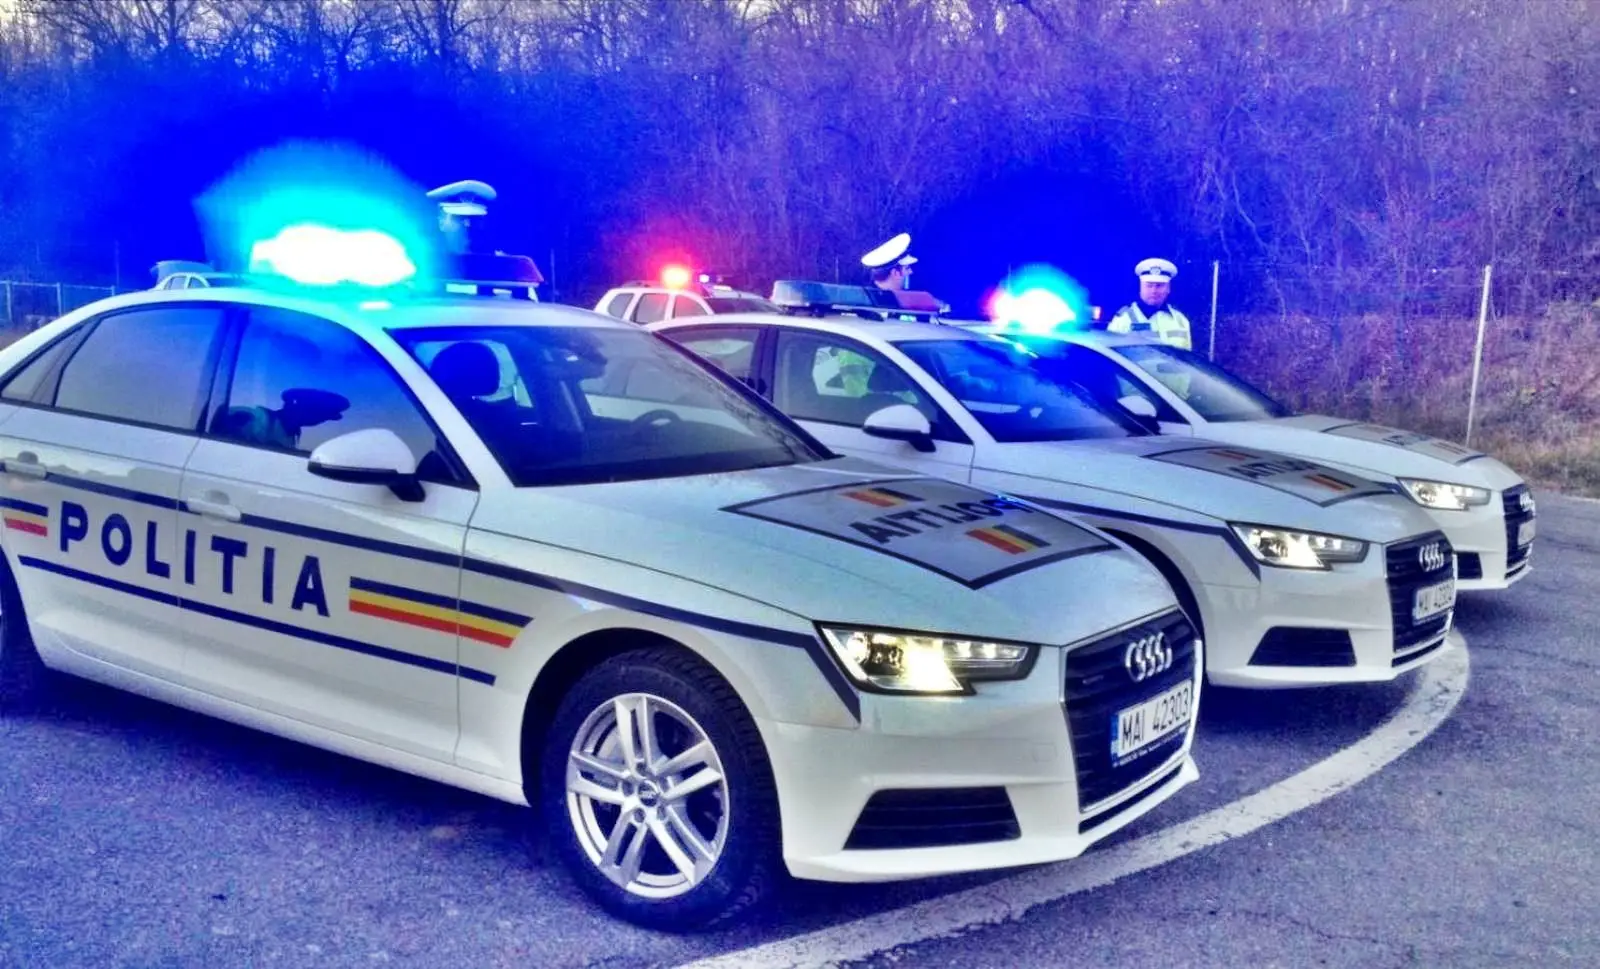 La polizia avverte gli automobilisti, resta presente sulle strade rumene